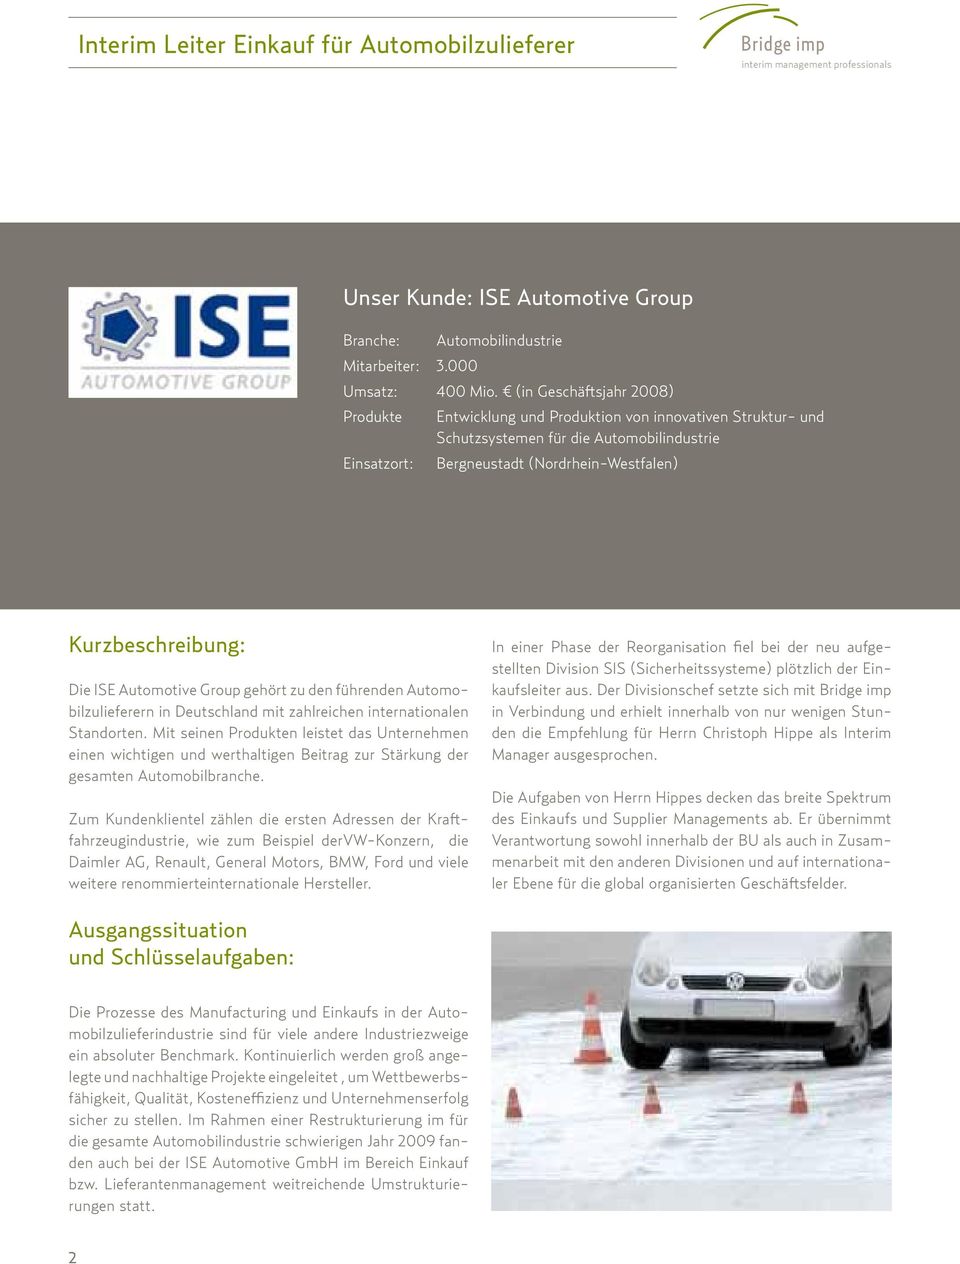 Die ISE Automotive Group gehört zu den führenden Automobilzulieferern in Deutschland mit zahlreichen internationalen Standorten.